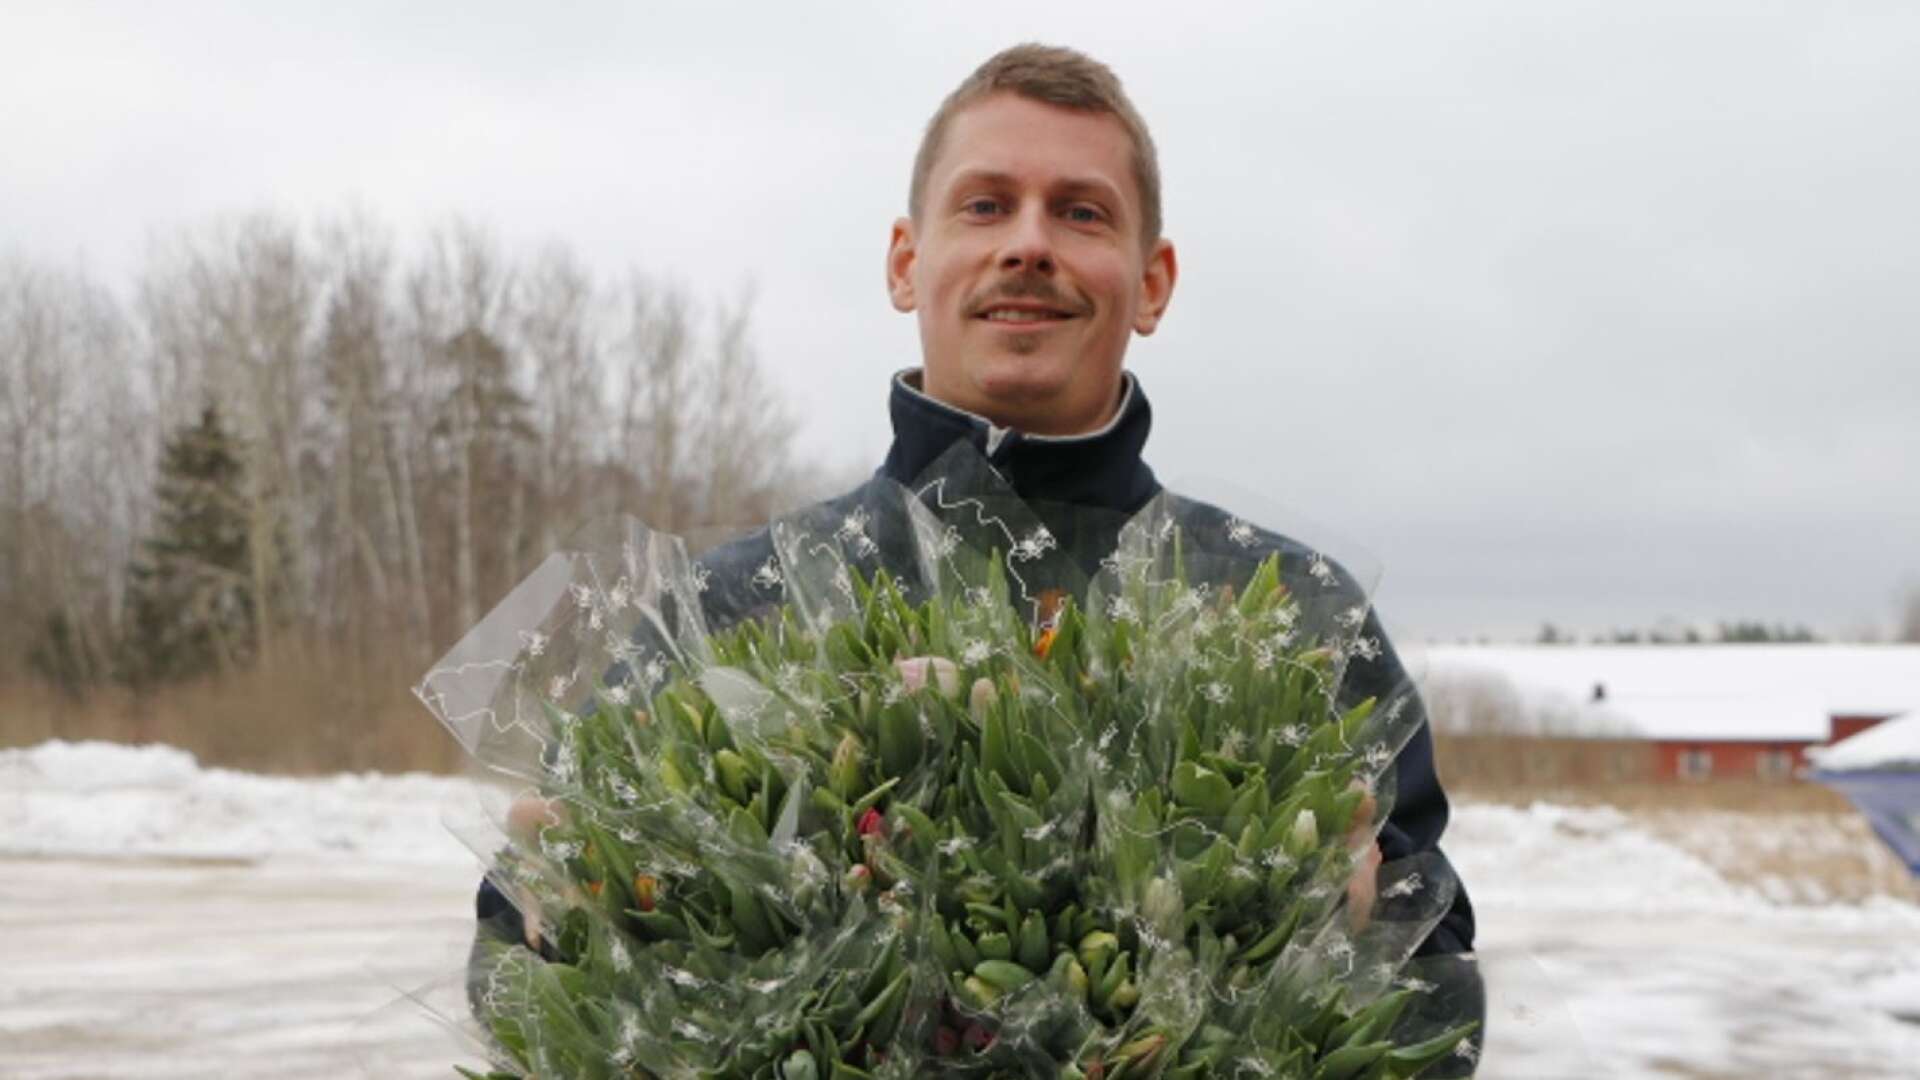 Tulpanernas tid är mellan jul och påsk, berättar Linus Albinsson, som har fullt upp inför Tulpanens dag.